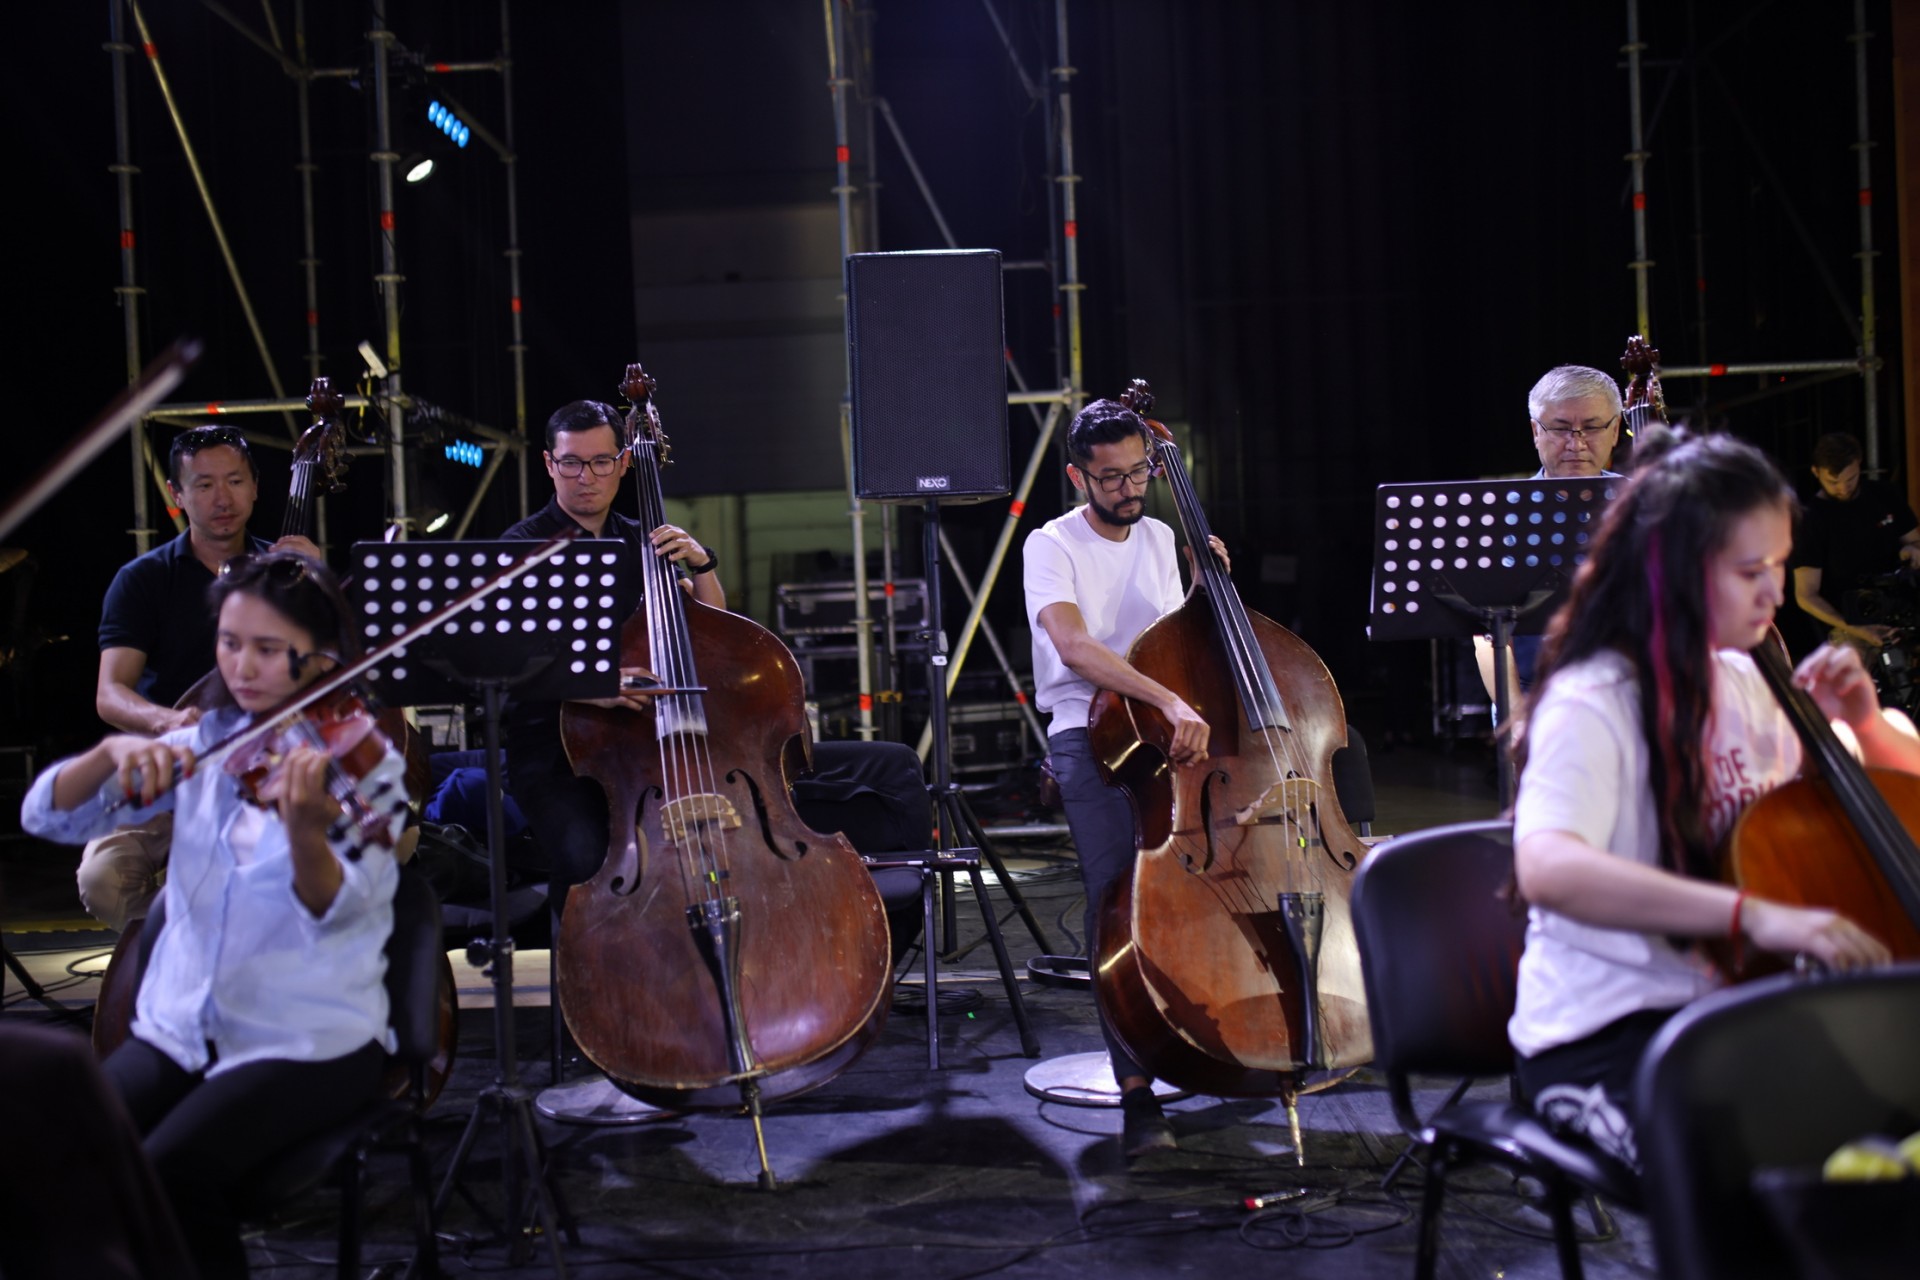 Концерт-посвящение Batyr. Gül Almaty:  смотрим атмосферные кадры с генеральной репетиции